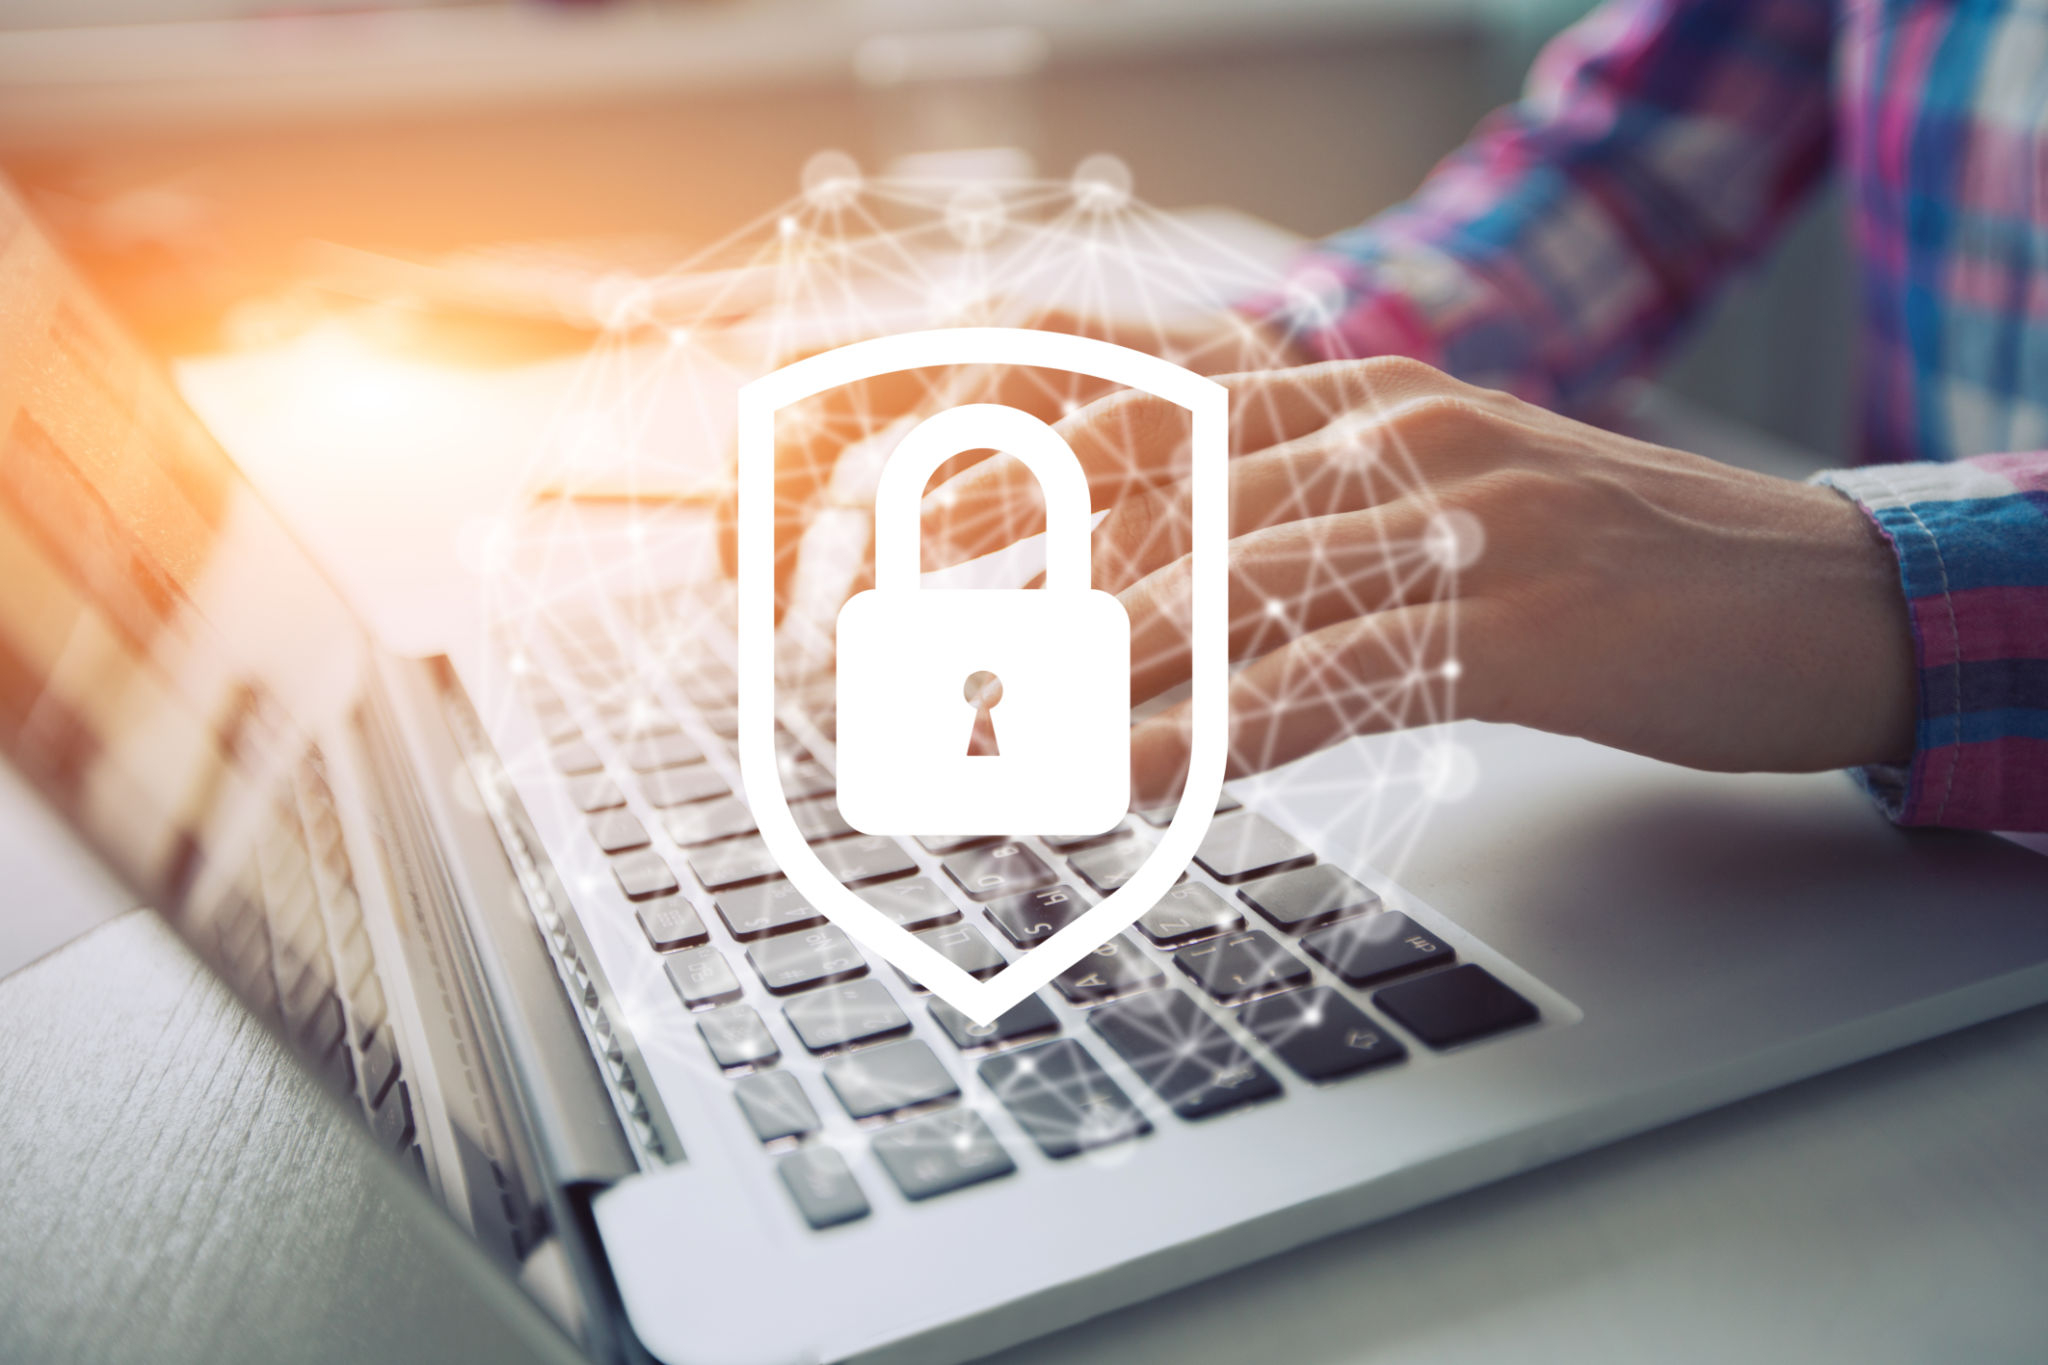 Ataques ransomware: entenda o que são e como proteger seu negócio desta ameaça - Ecotelecom Vivo Empresas